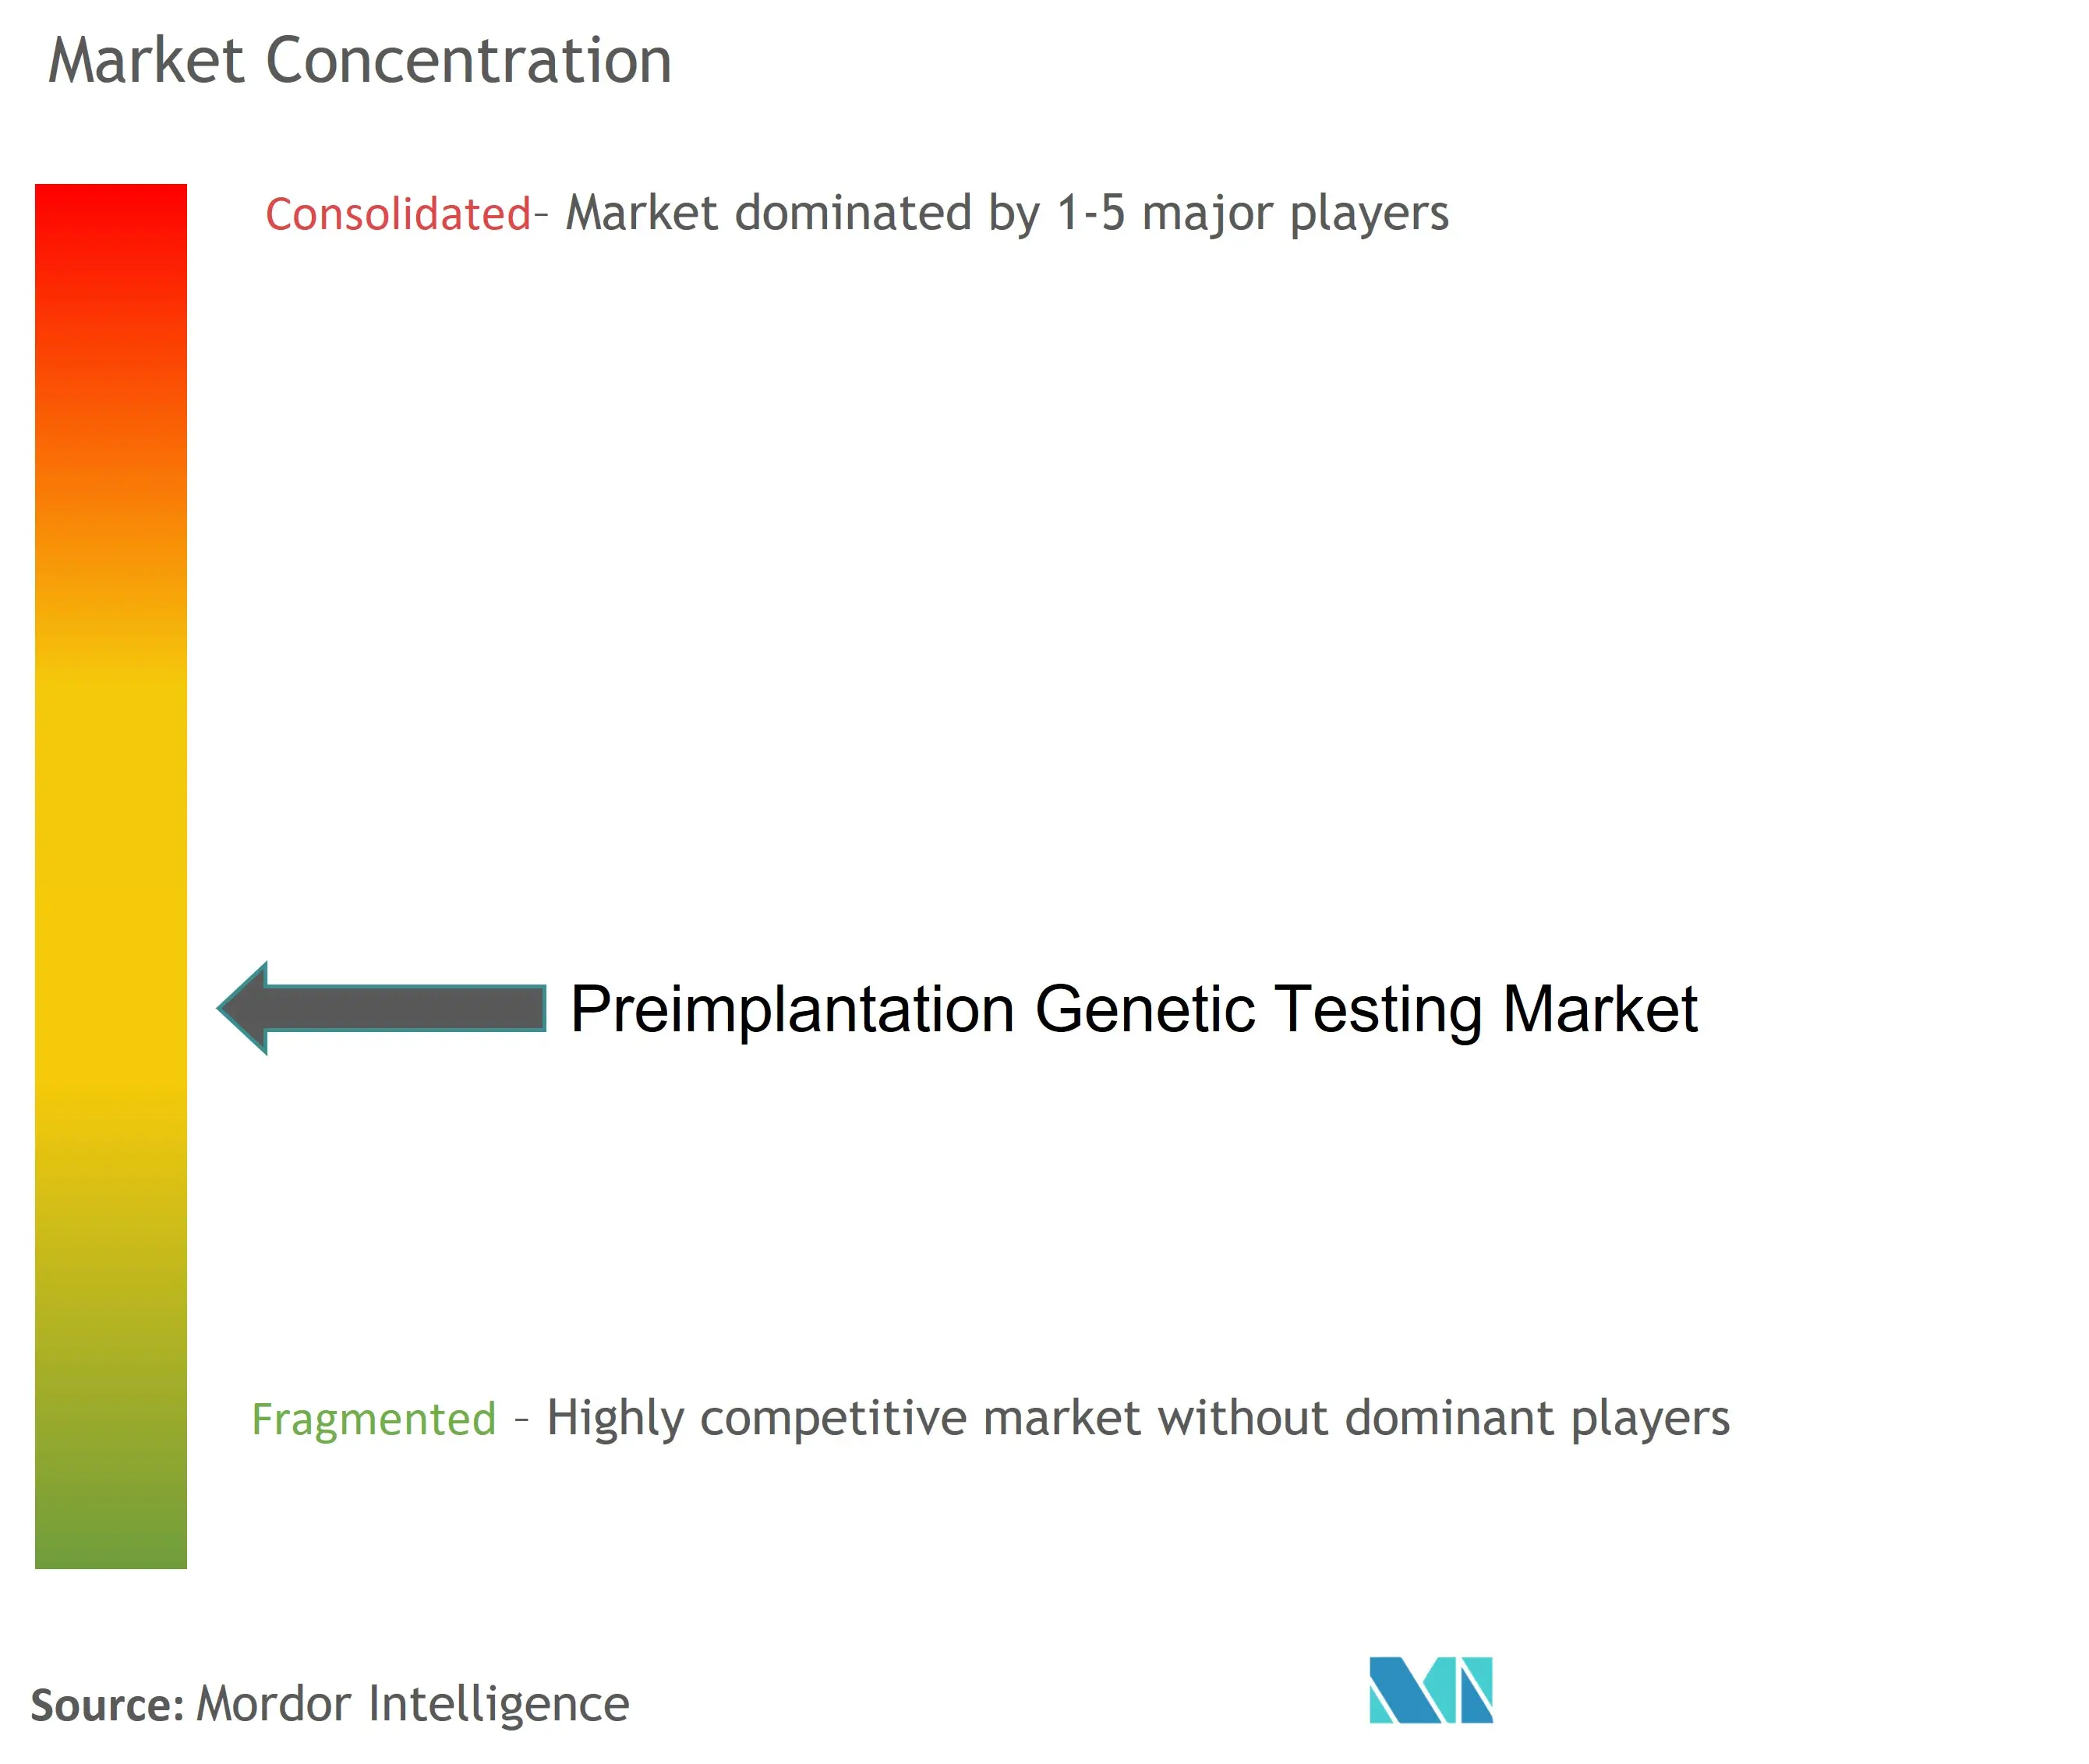 Preimplantation Genetic Testing Market Concentration